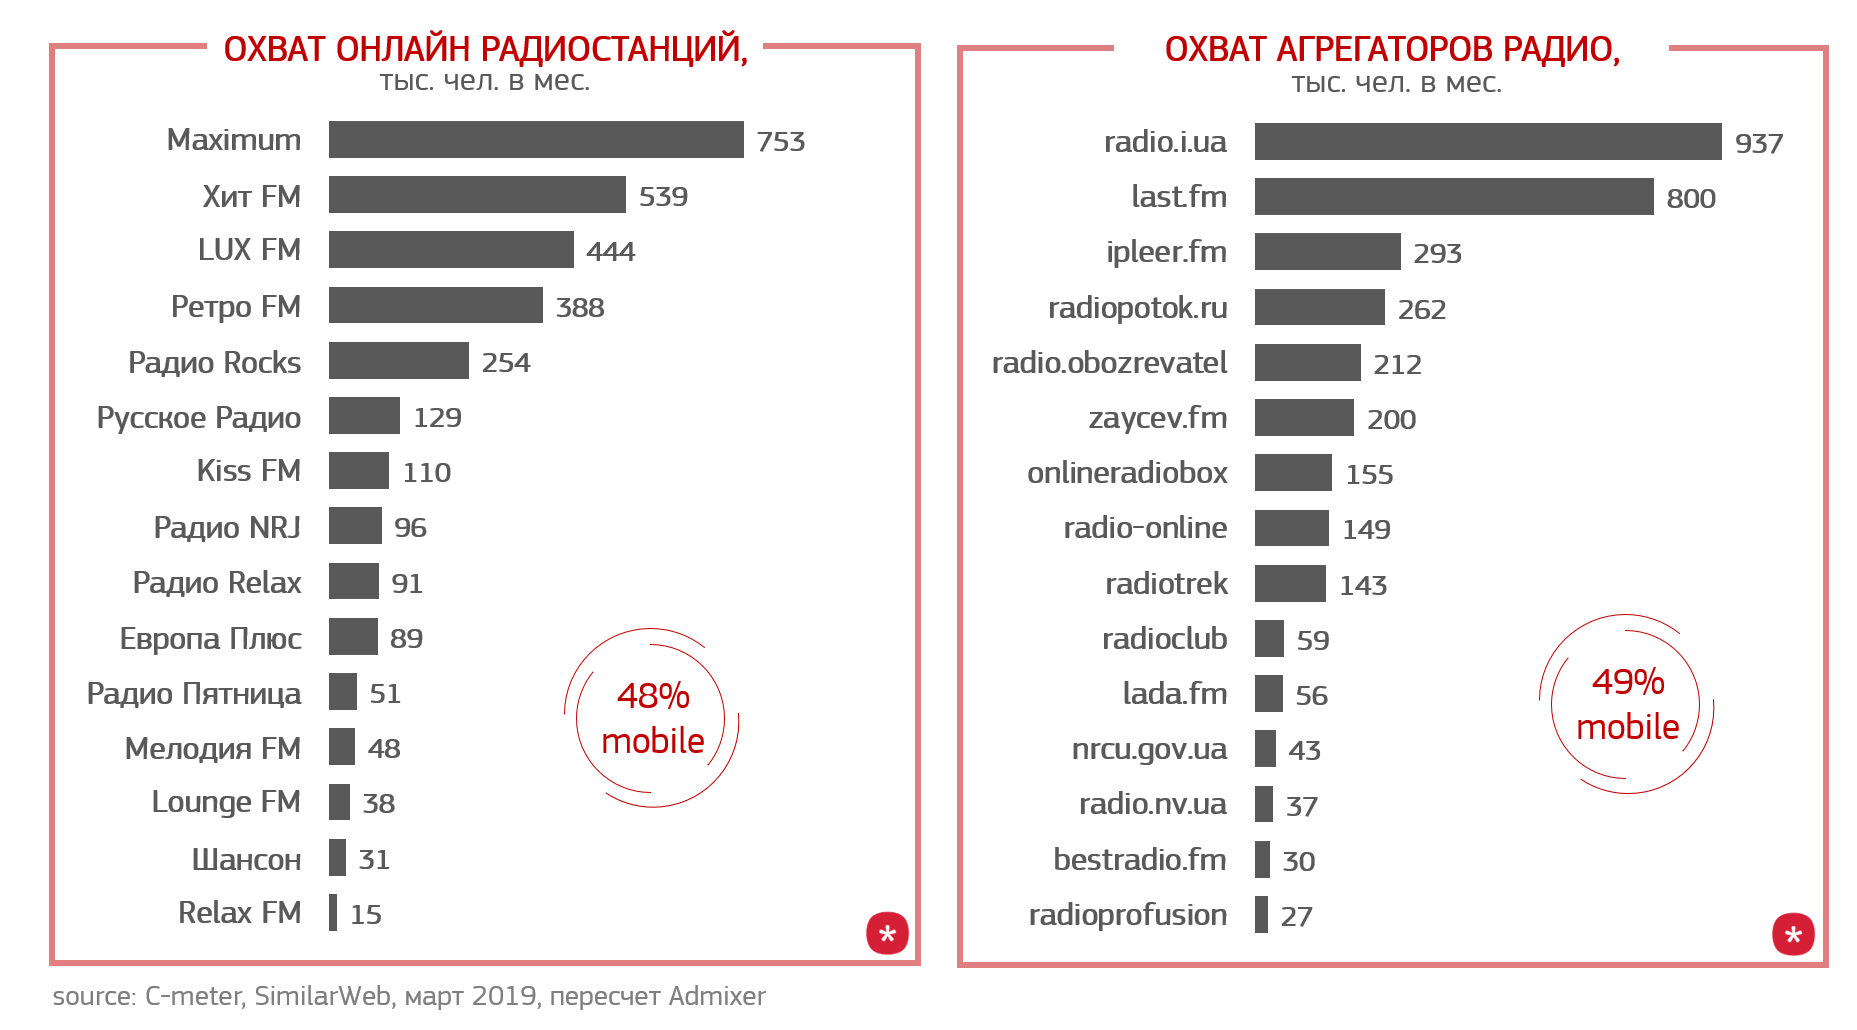 Самые популярные радио. Топ радиостанций. Популярные радиостанции России. Самые популярные радиостанции России.